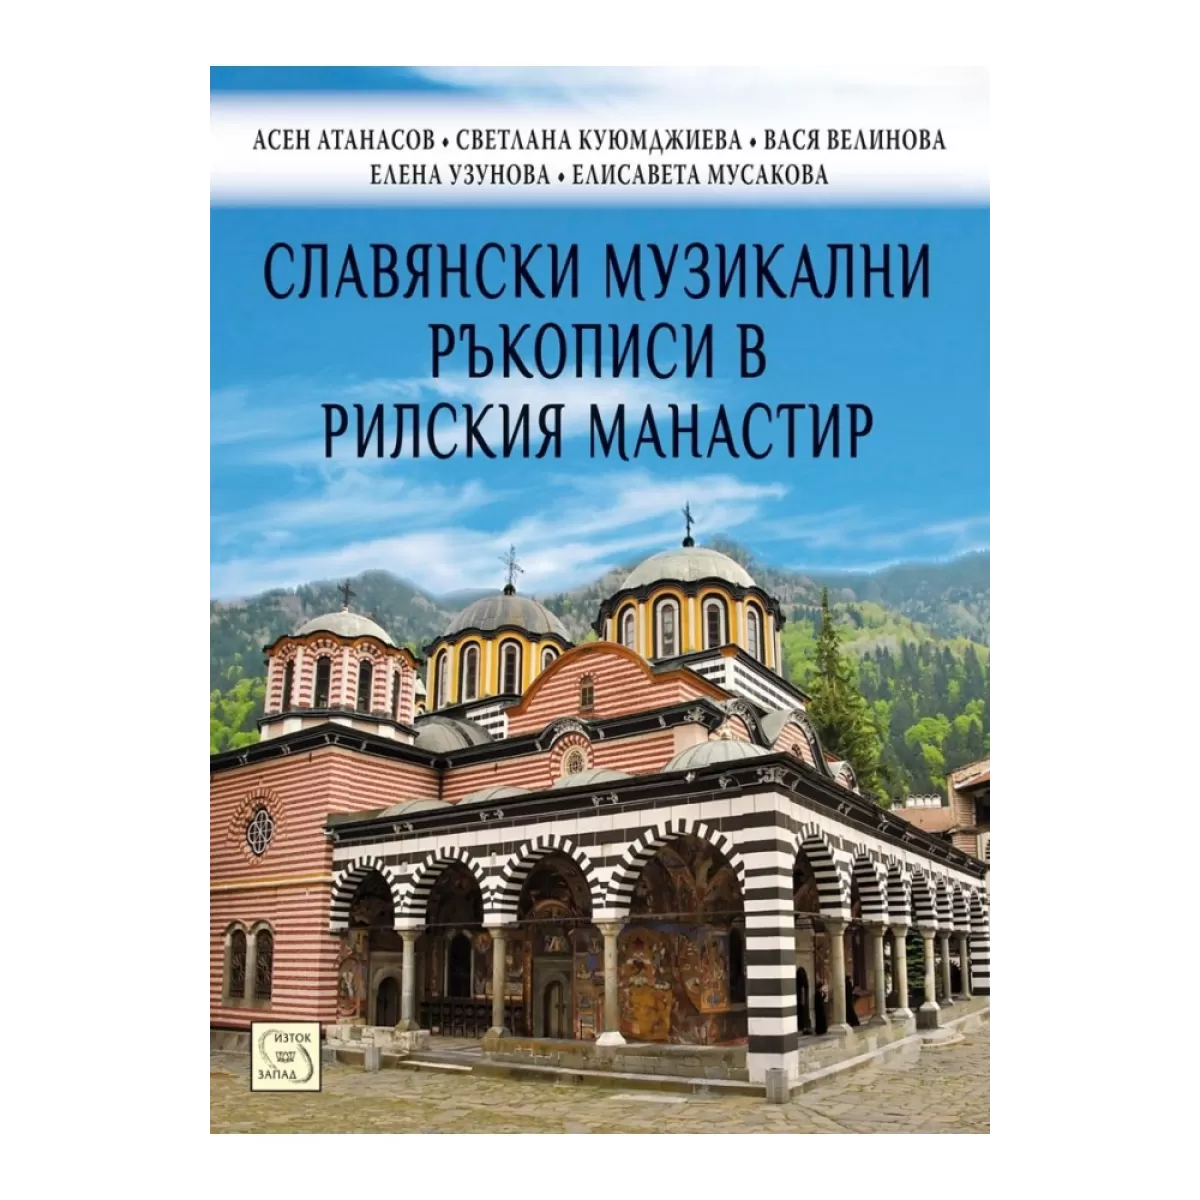 Славянски музикални ръкописи в Рилския манастир